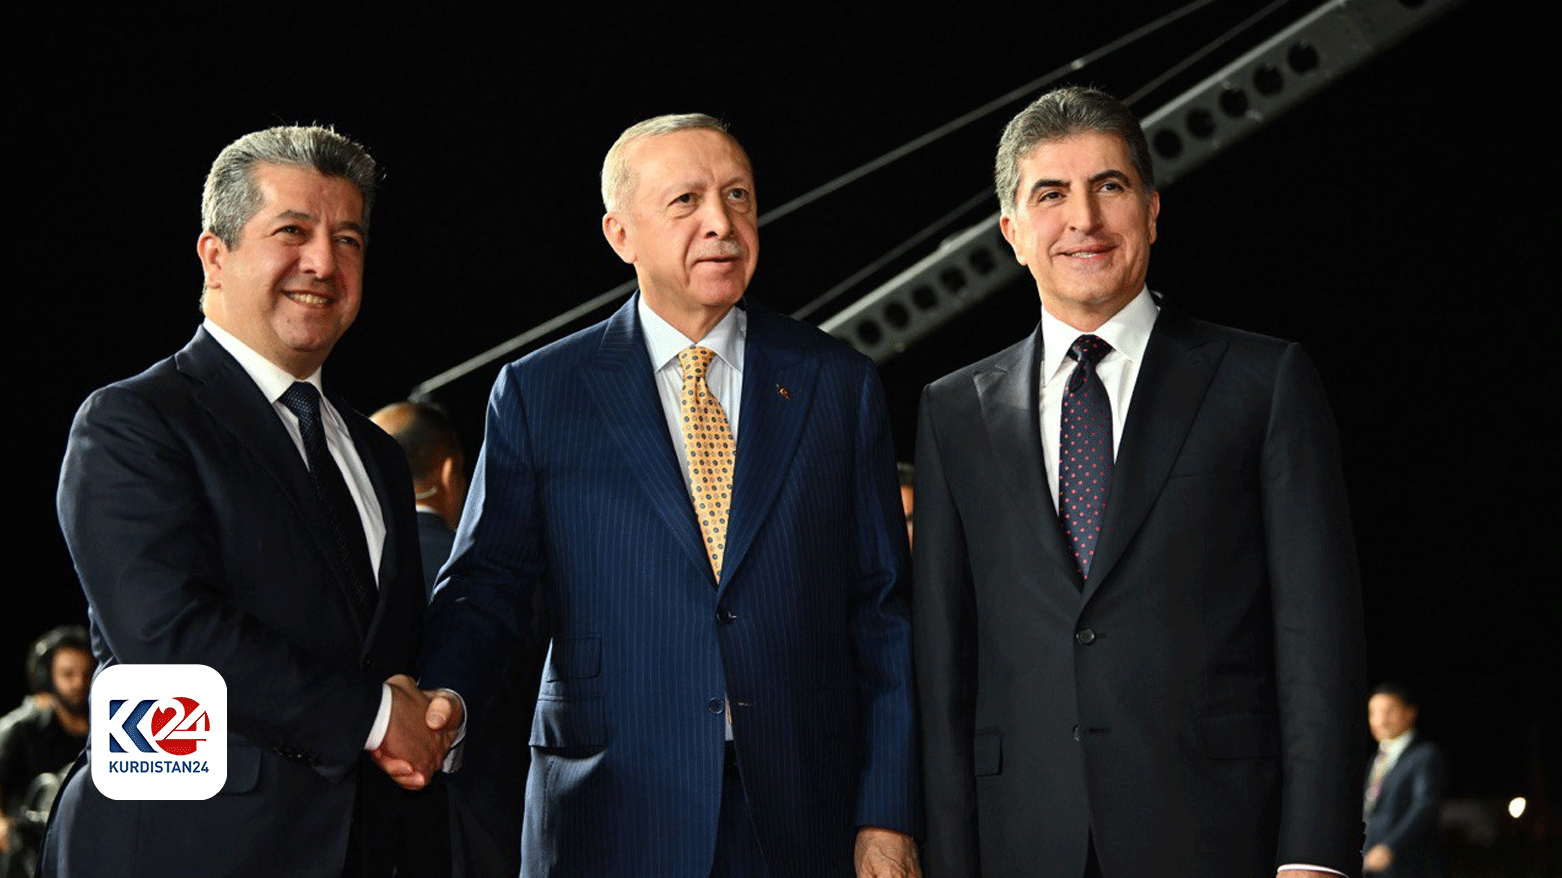 رئيس إقليم كوردستان ورئيس الحكومة يستقبلان الرئيس التركي في مطار أربيل / أرشيف